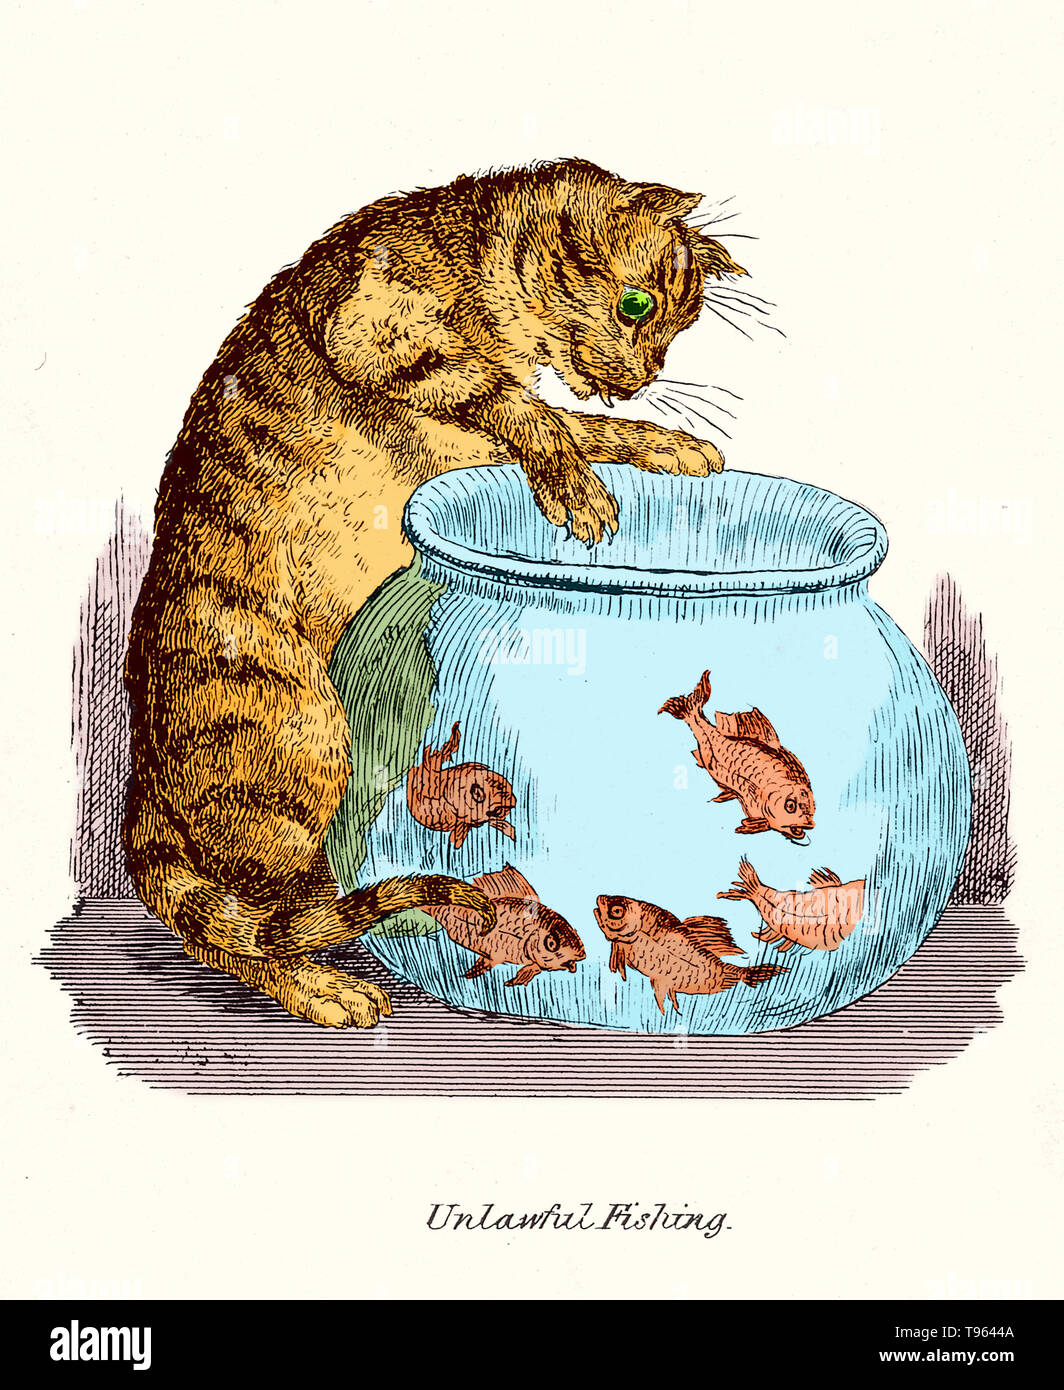 "Rechtswidrige Angeln": eine Katze beim Goldfisch in eine Schüssel scharren. Nachbildung einer Feder und Tinte Zeichnung von Robert Seymour. Dieses Bild hat Farbe verbessert. Stockfoto